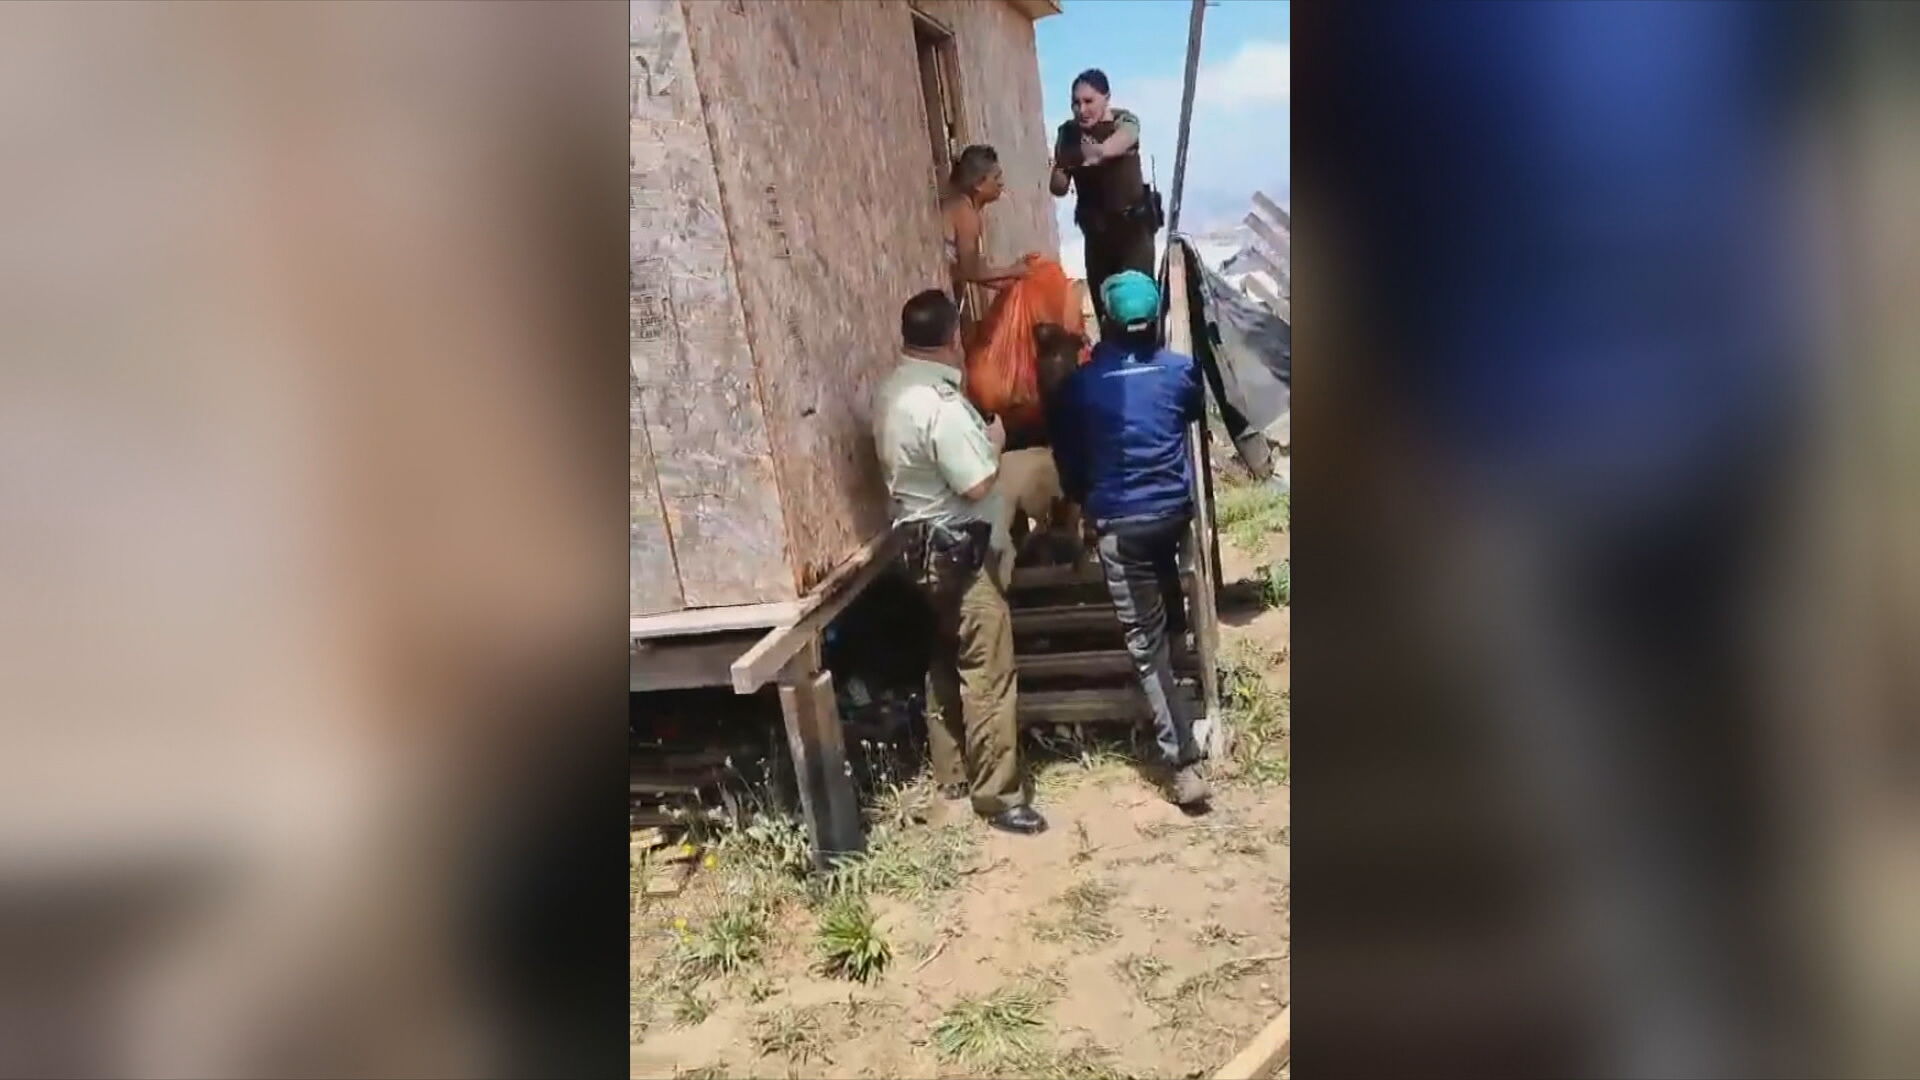 mujer linchada en san antonio: el video que muestra uno de los secuestros que se le acusa